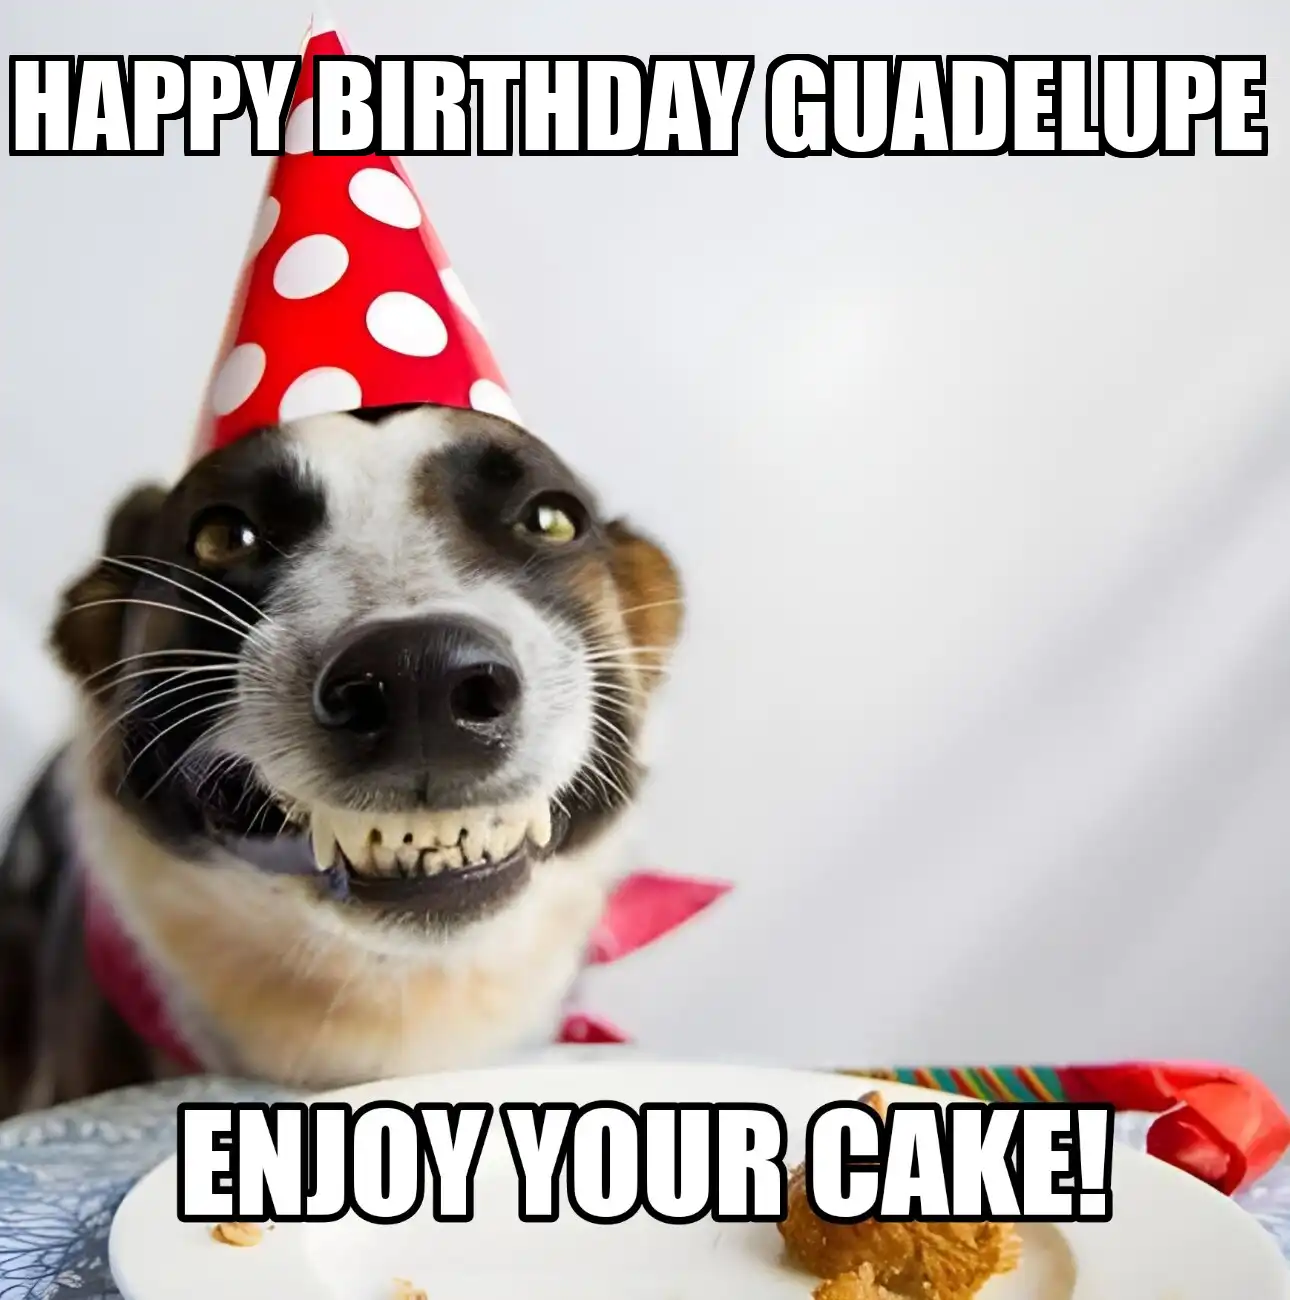 Happy Birthday Guadelupe Enjoy Your Cake Dog Meme